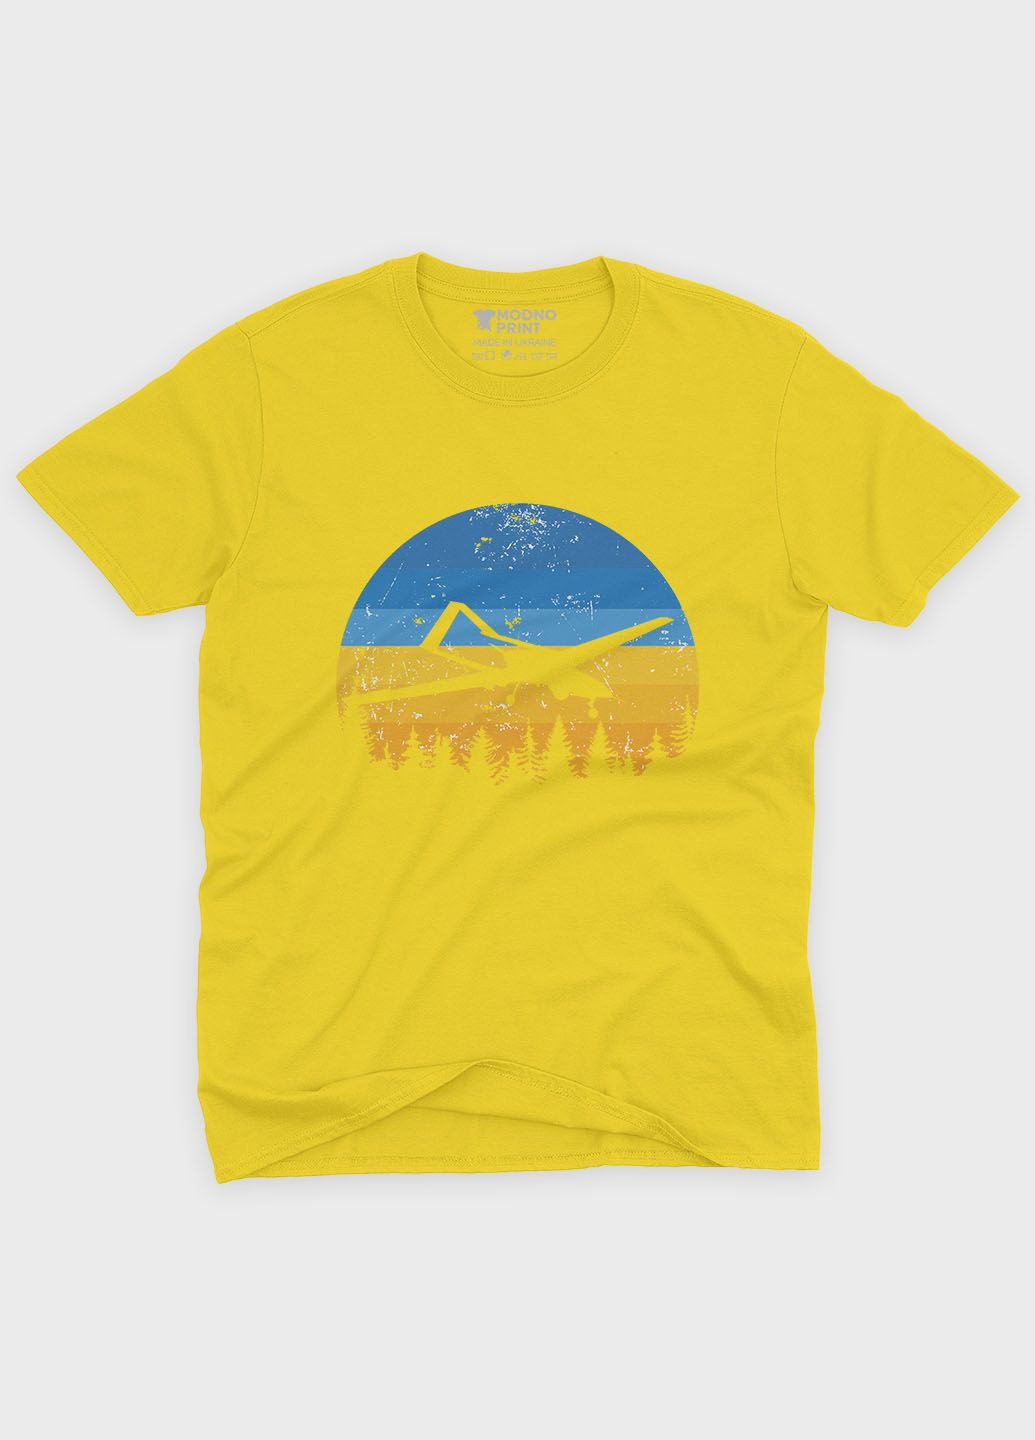 Желтая демисезонная футболка для мальчика с патриотическим принтом байрактар (ts001-5-sun-005-1-127-b) Modno